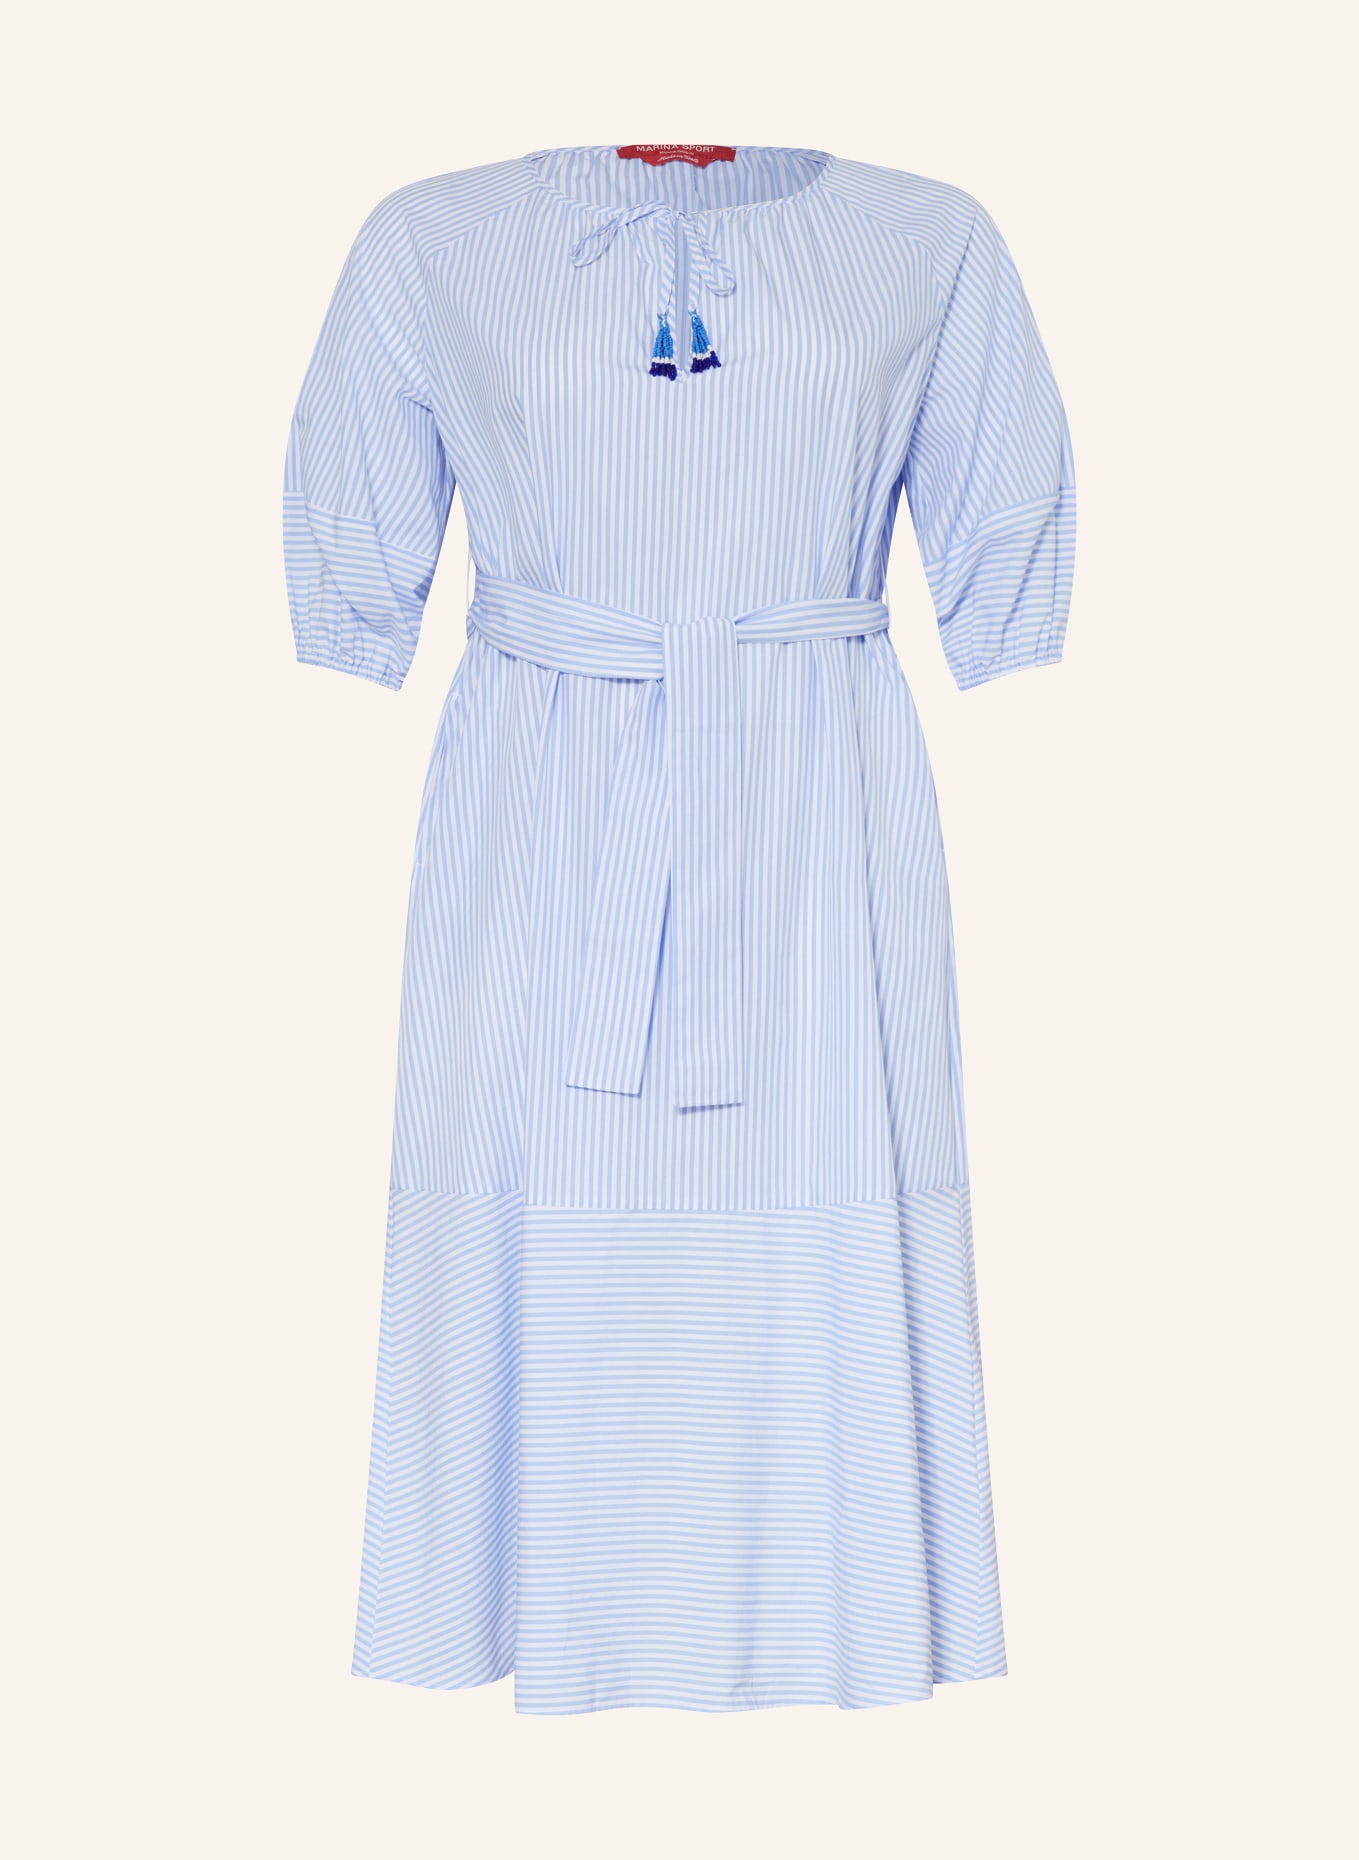 MARINA RINALDI SPORT Kleid, Farbe: WEISS/ HELLBLAU (Bild 1)